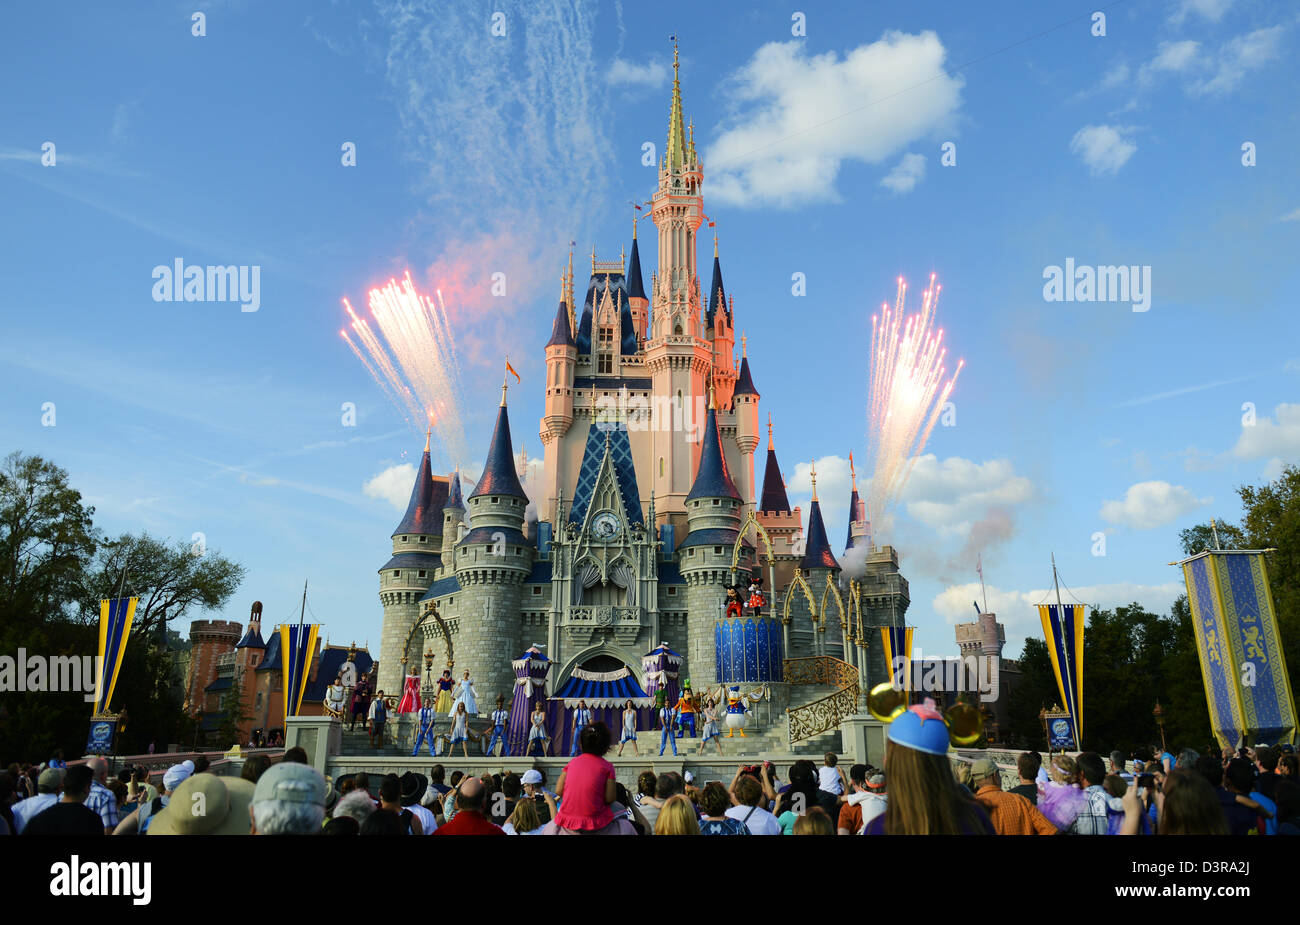 Fuochi d'artificio andando fuori al Castello Disney in Disney World dopo uno spettacolo con Topolino e Minnie, Pippo e altri caratteri. Foto Stock